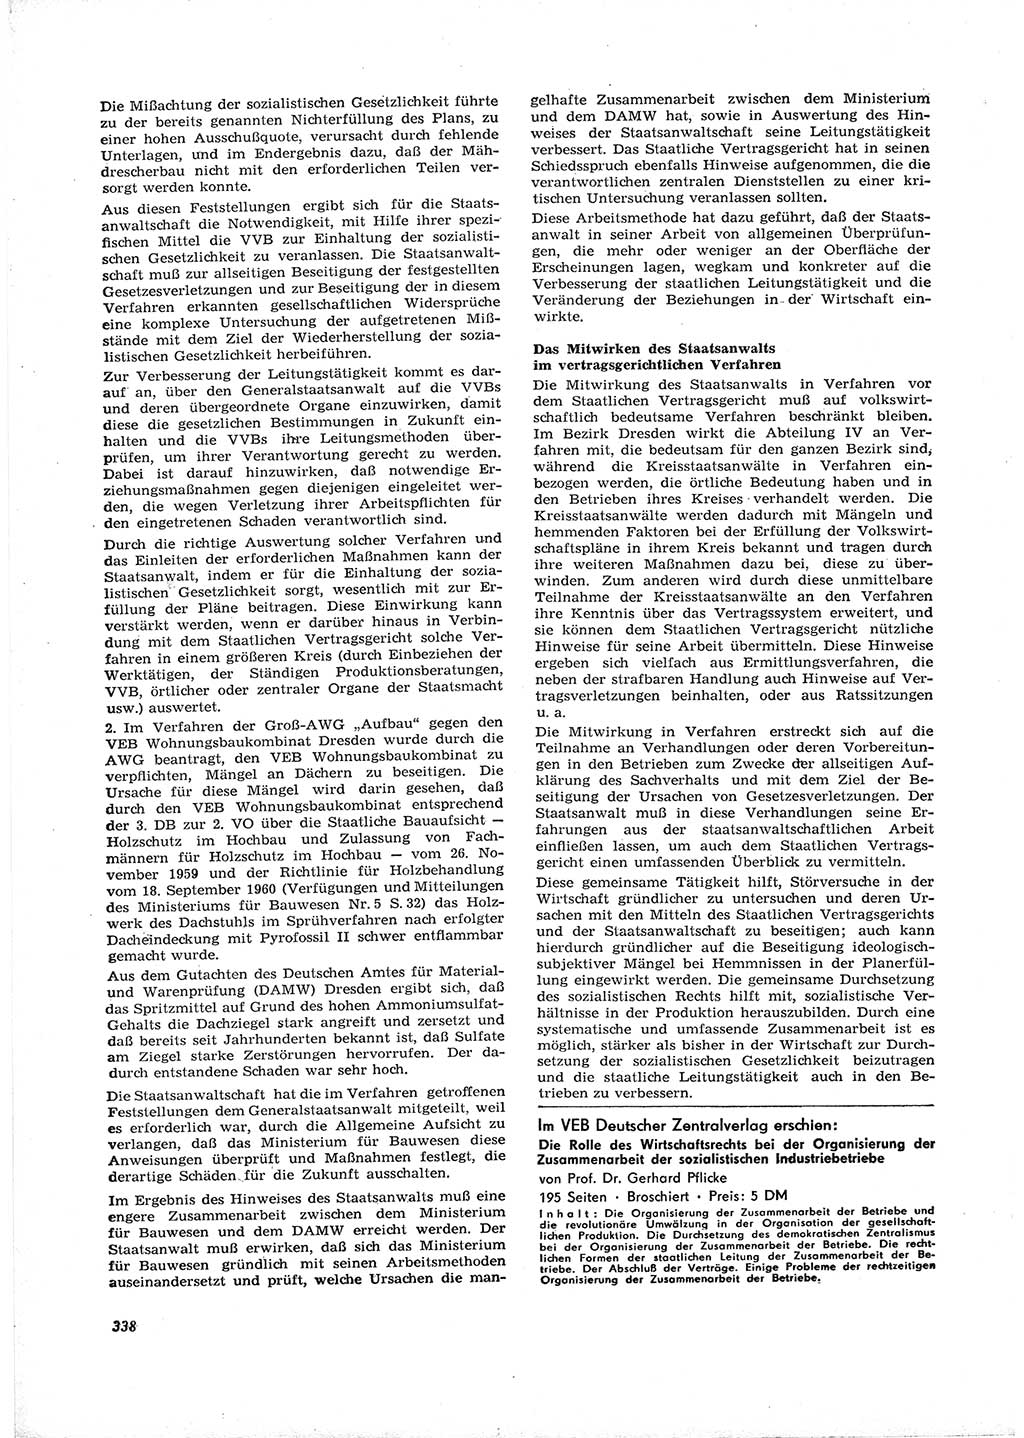 Neue Justiz (NJ), Zeitschrift für Recht und Rechtswissenschaft [Deutsche Demokratische Republik (DDR)], 16. Jahrgang 1962, Seite 338 (NJ DDR 1962, S. 338)